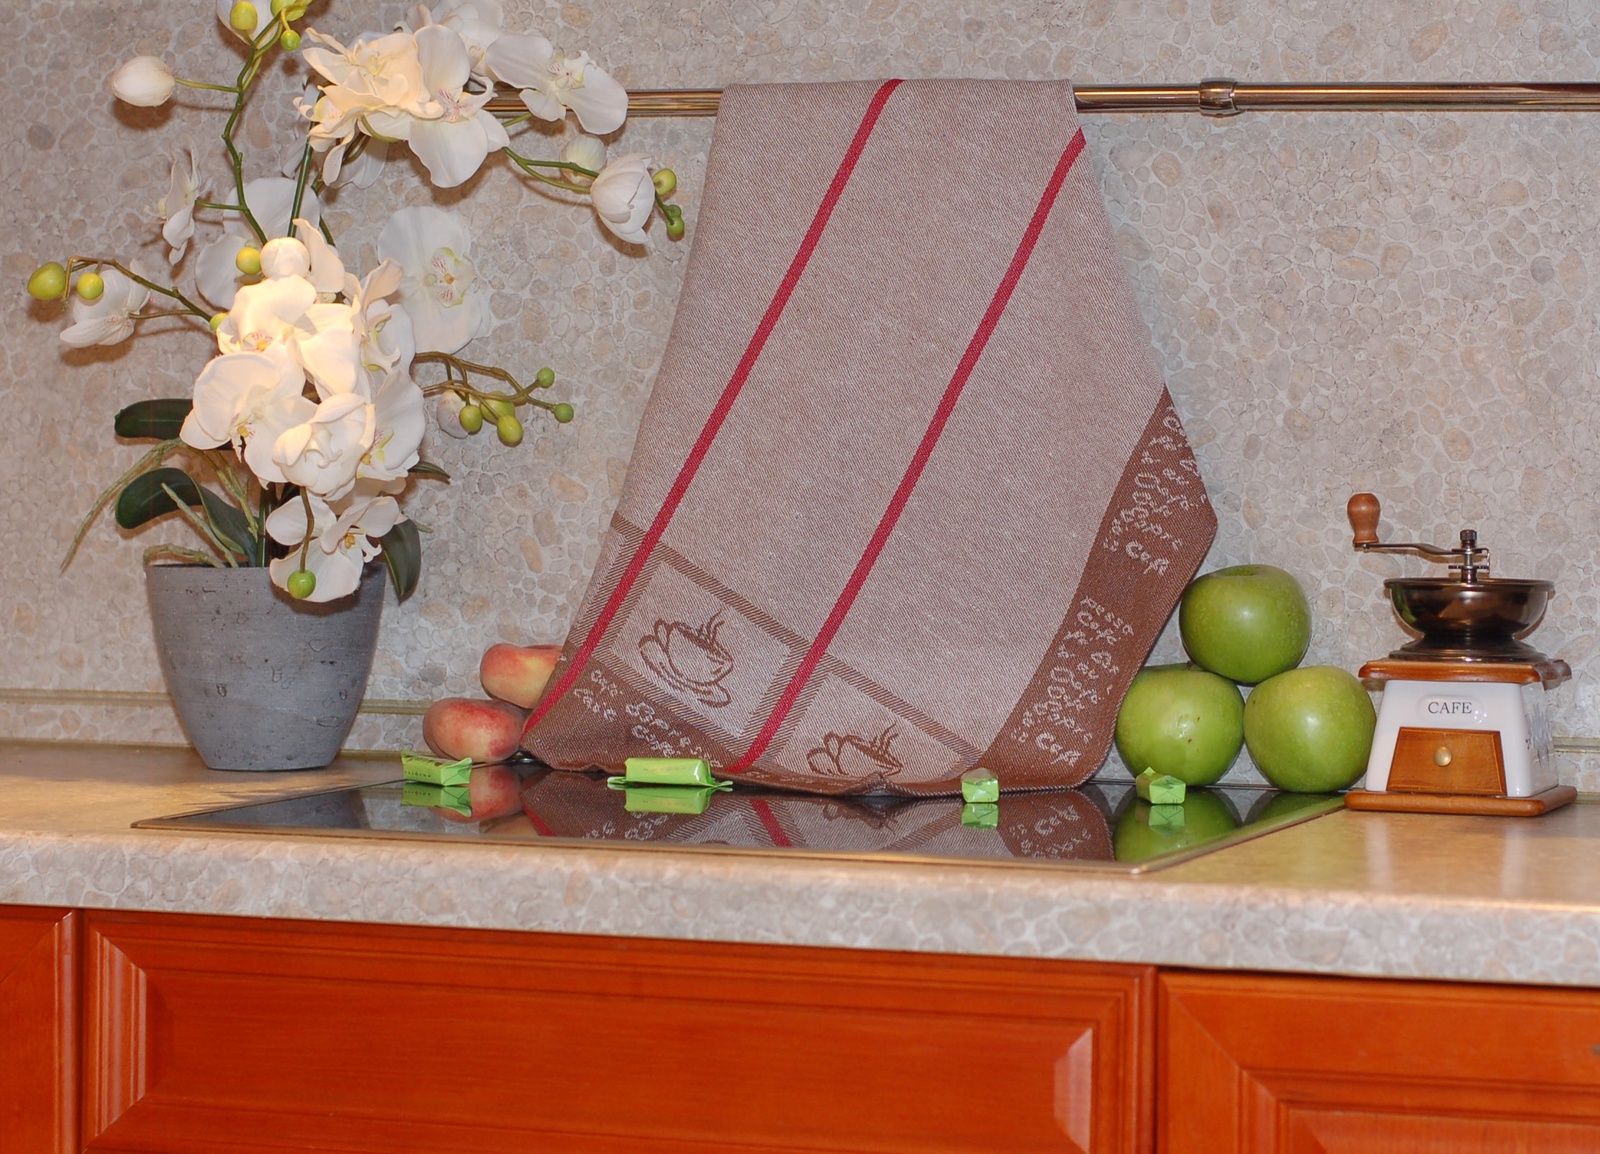 фото Полотенце кухонное ТекСтиль для дома 507061-1 CAFЕ, коричневый, бежевый, красный